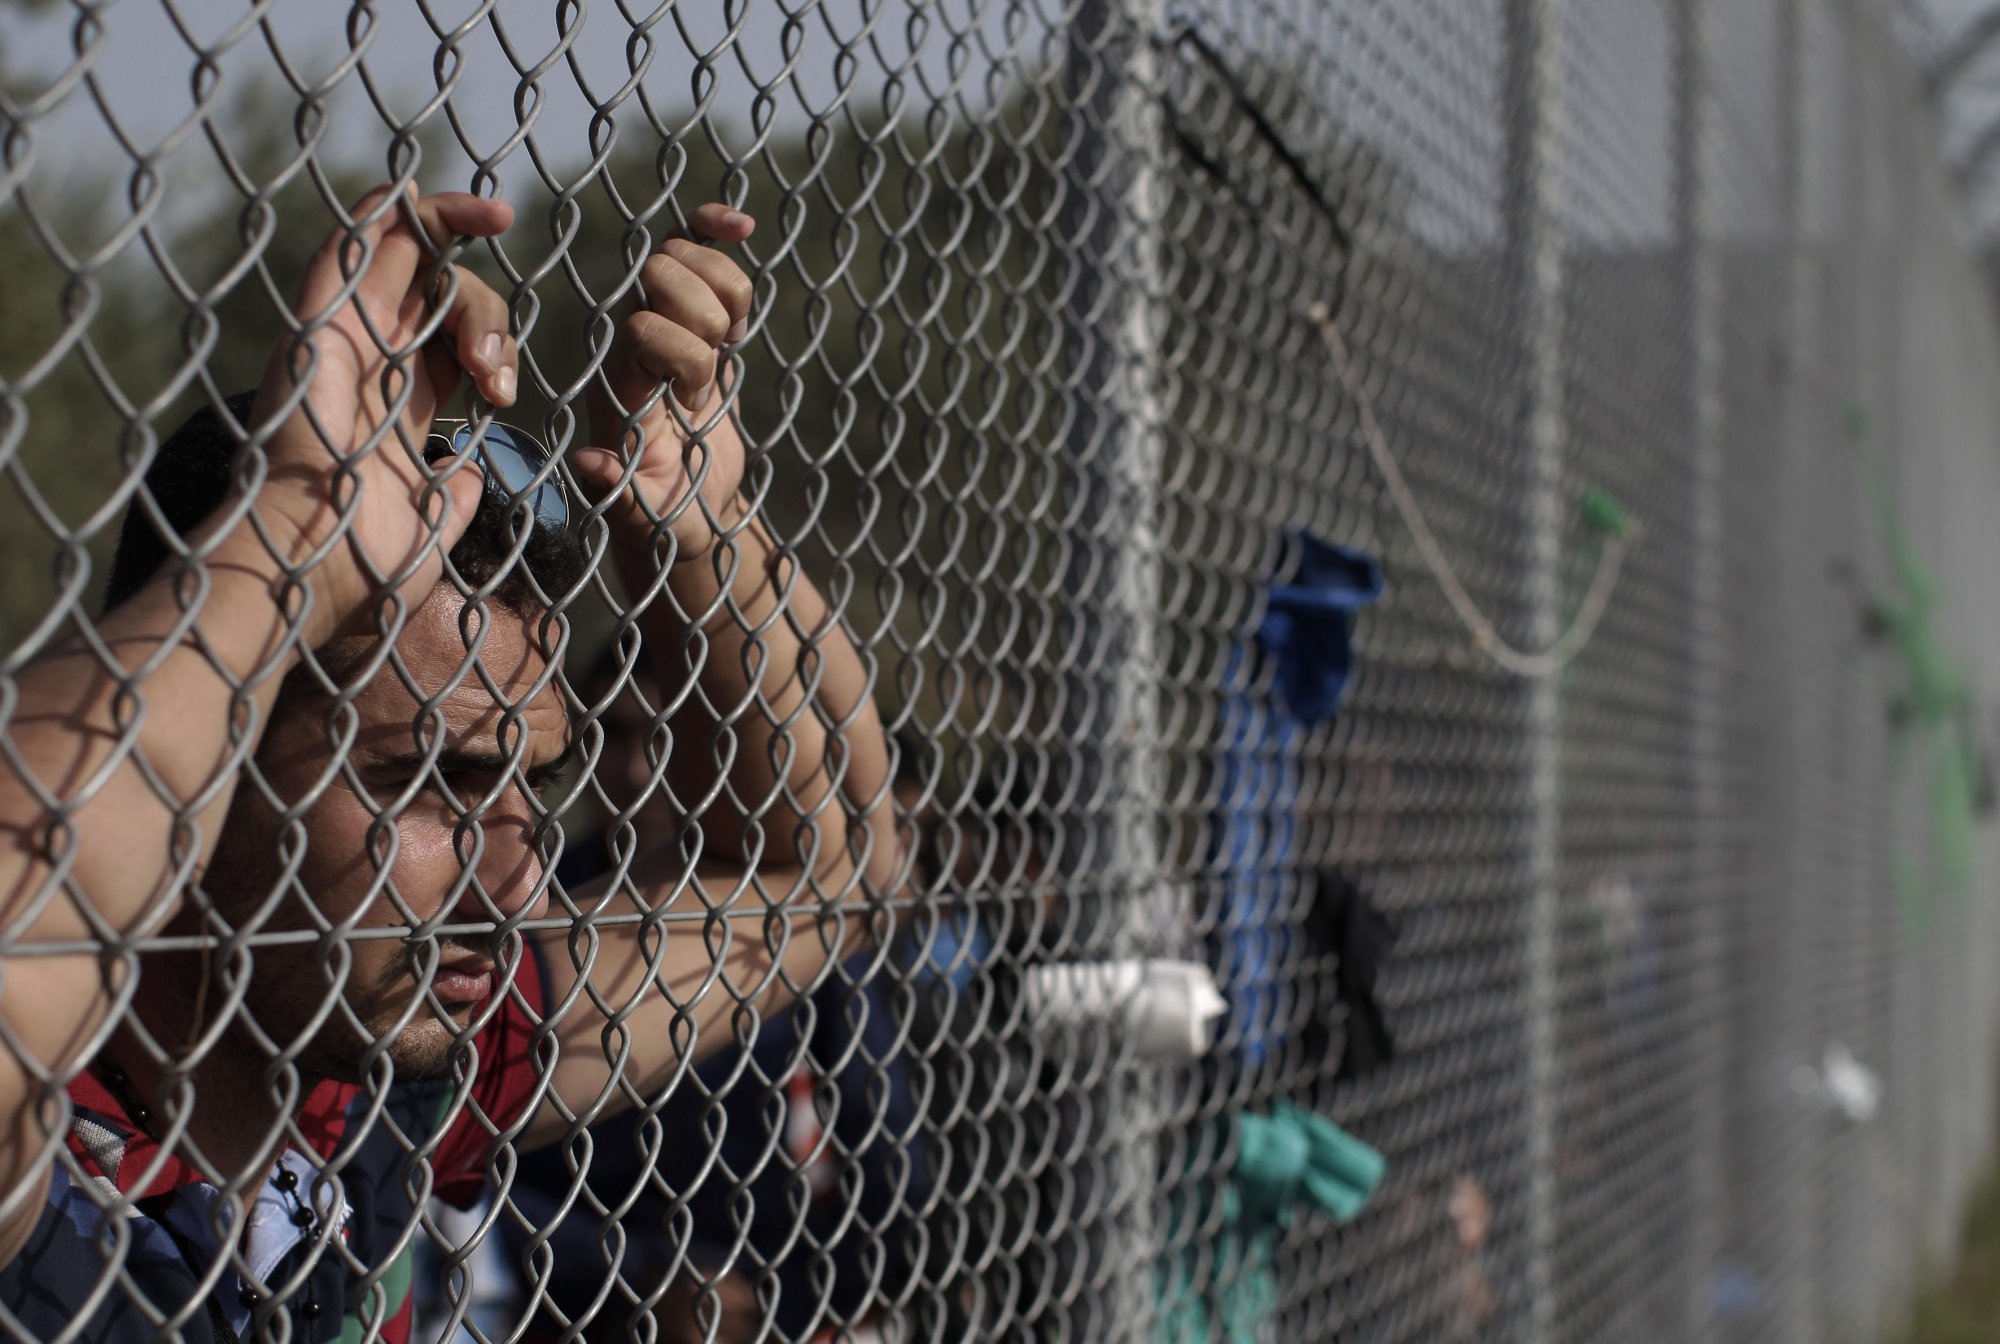 Ιταλία: Θες να κάνεις αίτηση για άσυλο; Πλήρωσε 5.000 ευρώ πρώτα